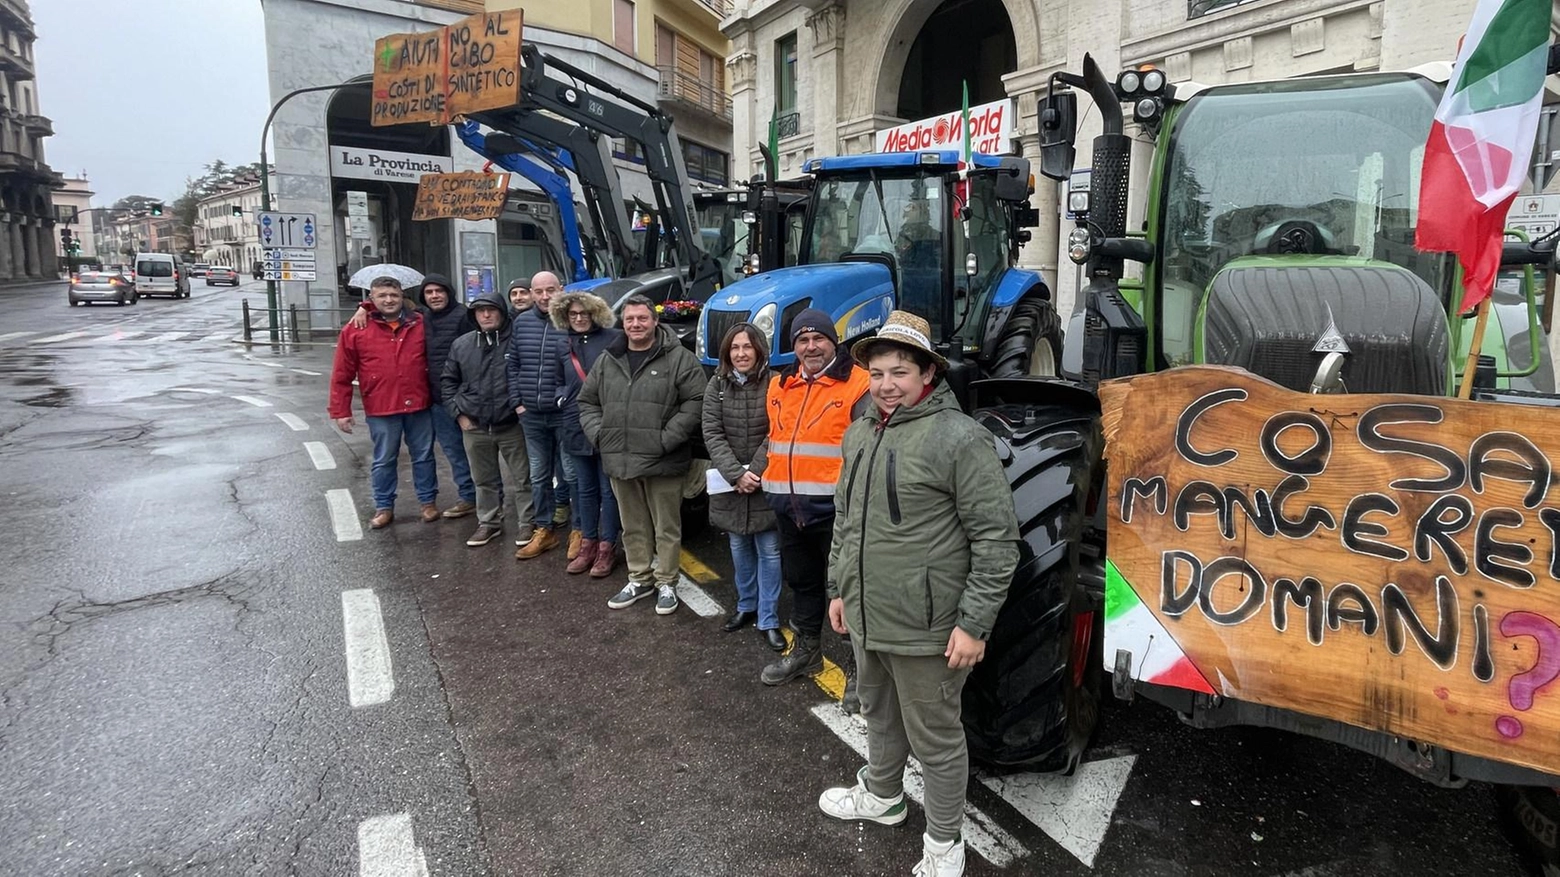 La protesta dei trattori. Delegazione in Provincia:: "La crisi ci sta piegando"